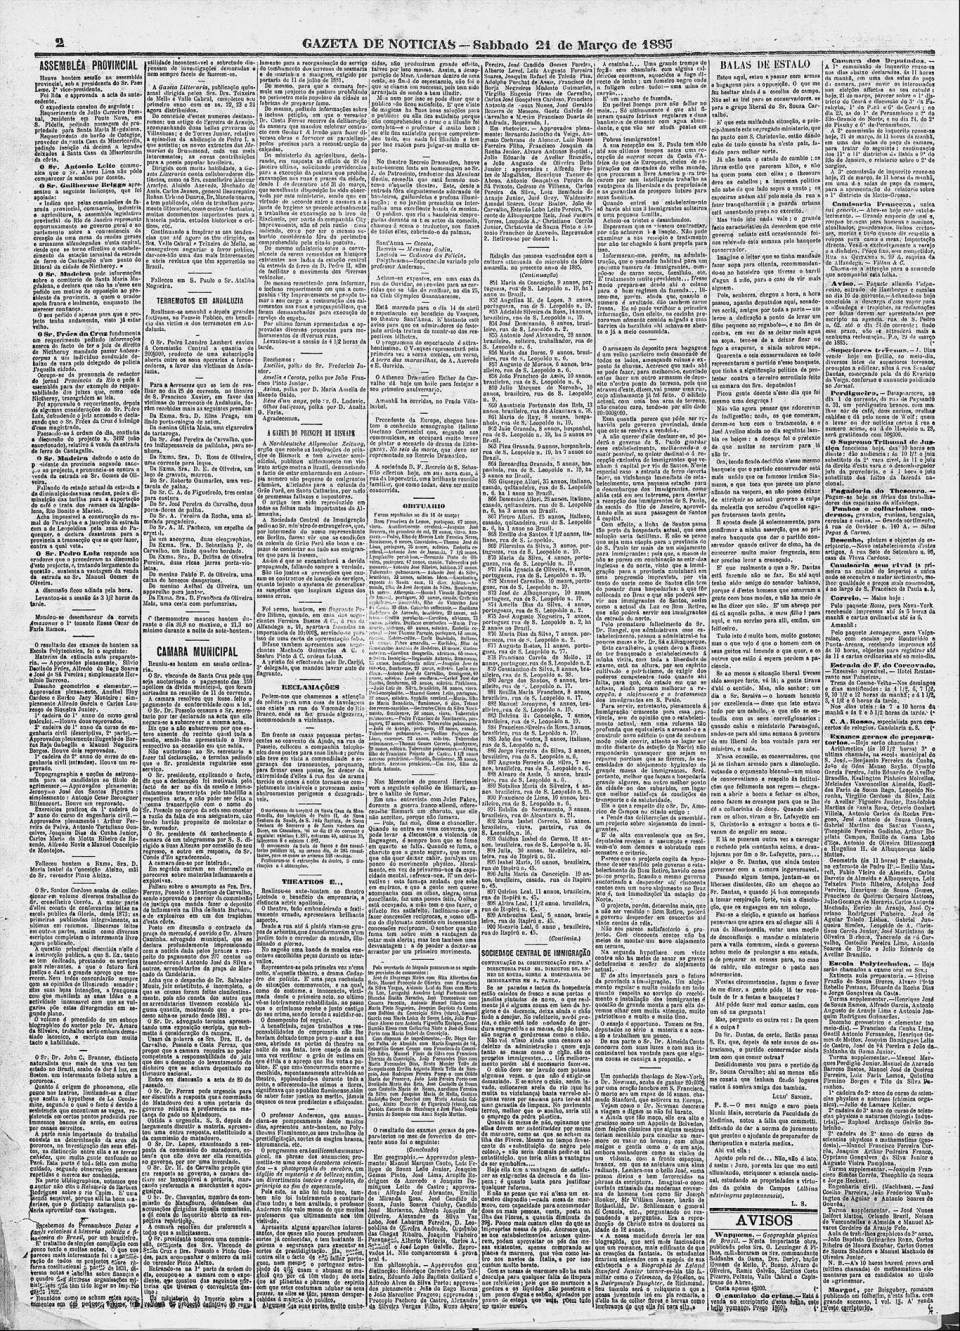 art-hospedaria-do-bom-retiro-reformas-gazeta-de-noticias-21-march-1885-folha